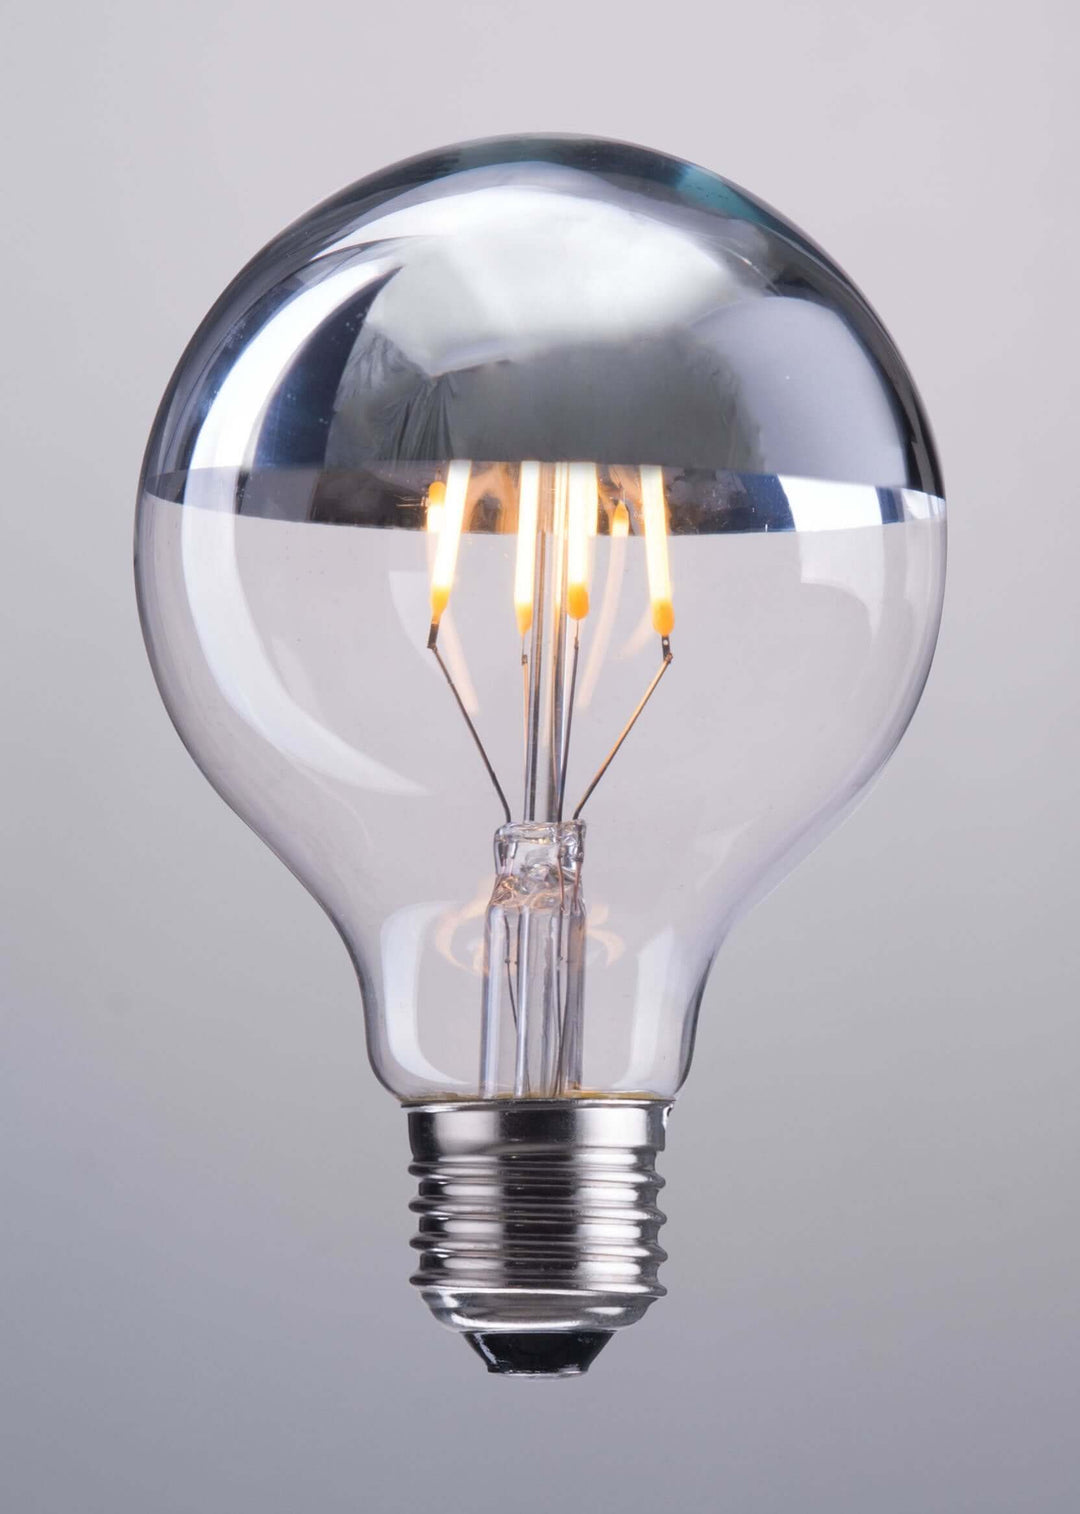 4 Watt Light Bulbs